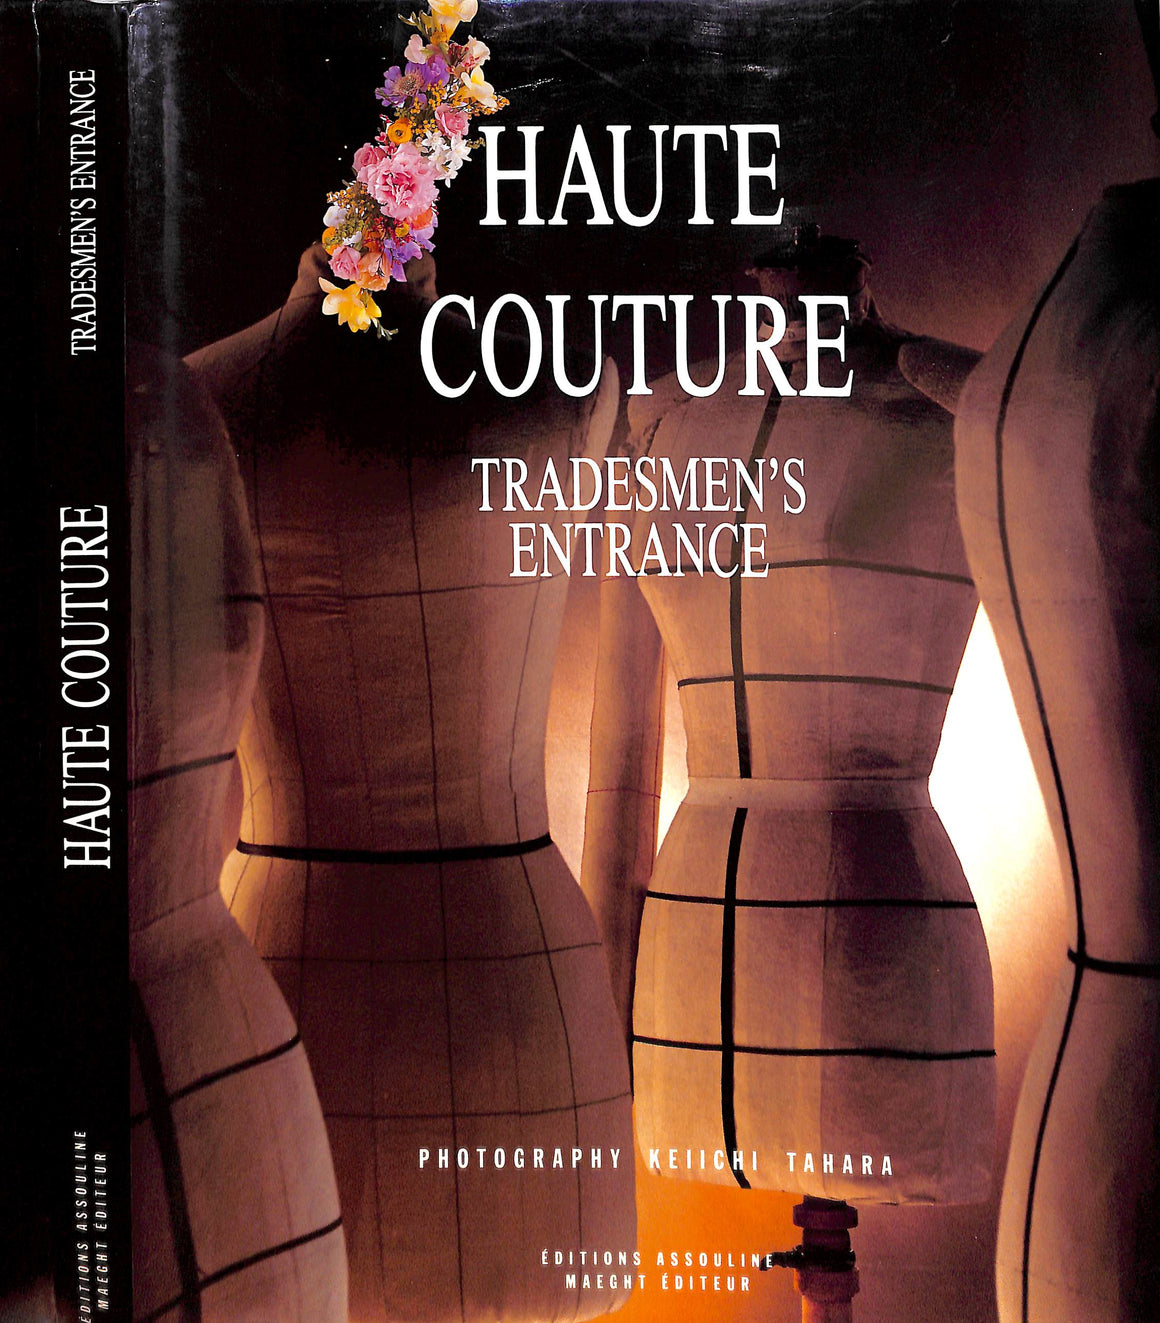 "Haute Couture: Tradesmen's Entrance" 1990 SEGURET, Olivier [text]